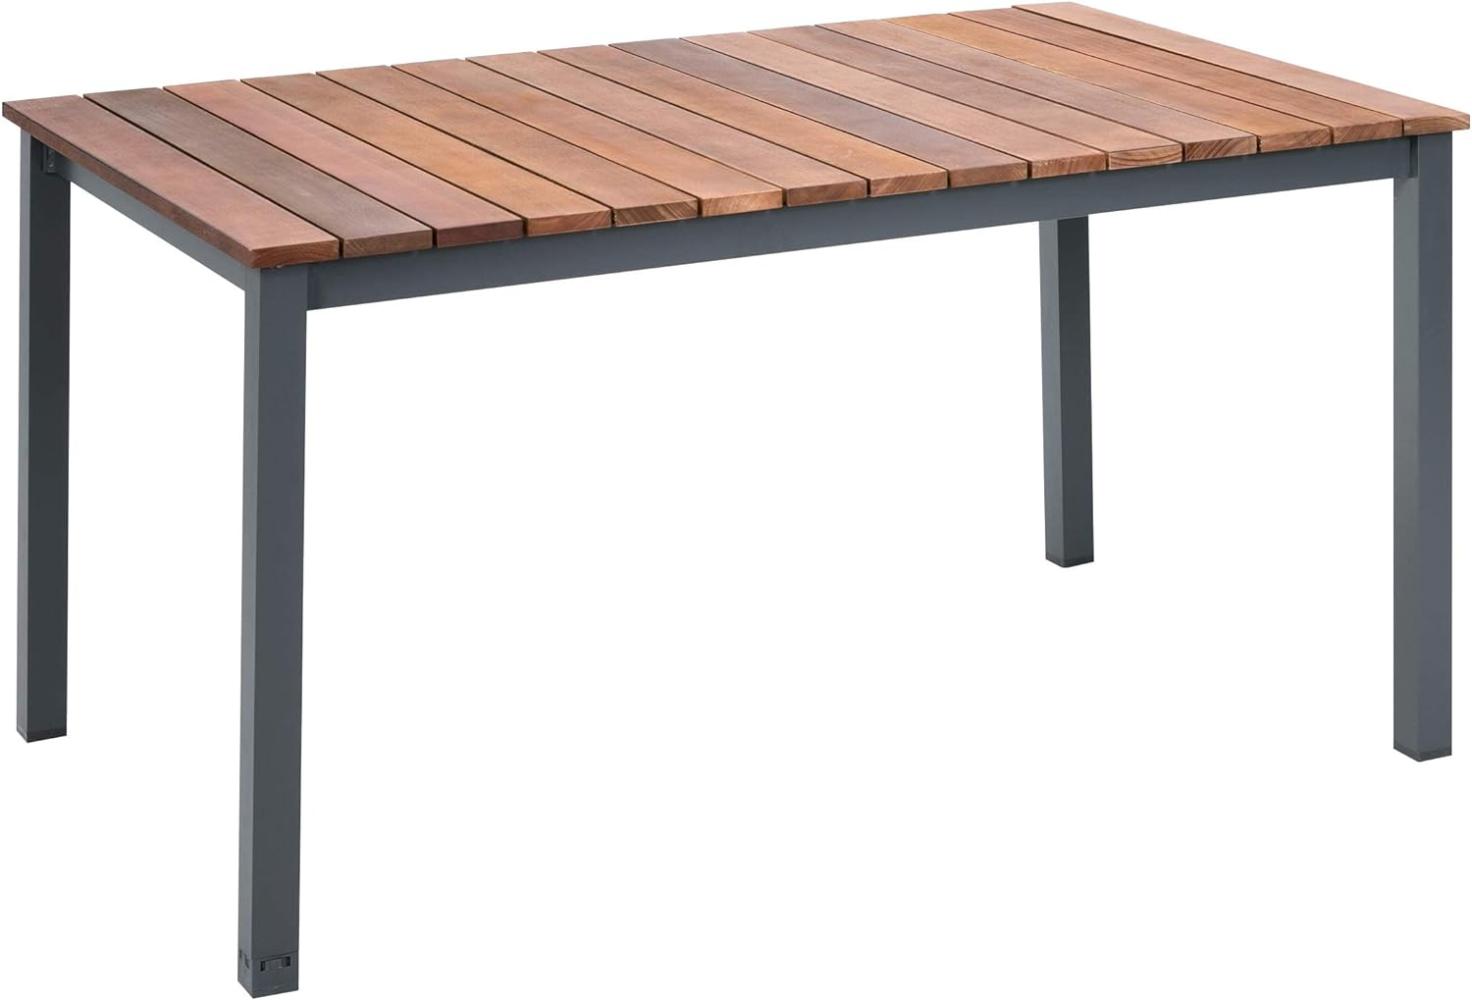 greemotion Tisch Mackay, Esstisch mit Niveauregulierung, Holztisch aus Eukalyptusholz, Gartentisch in Anthrazit/Braun, Maße: ca. 150 x 74 x 90 cm Bild 1